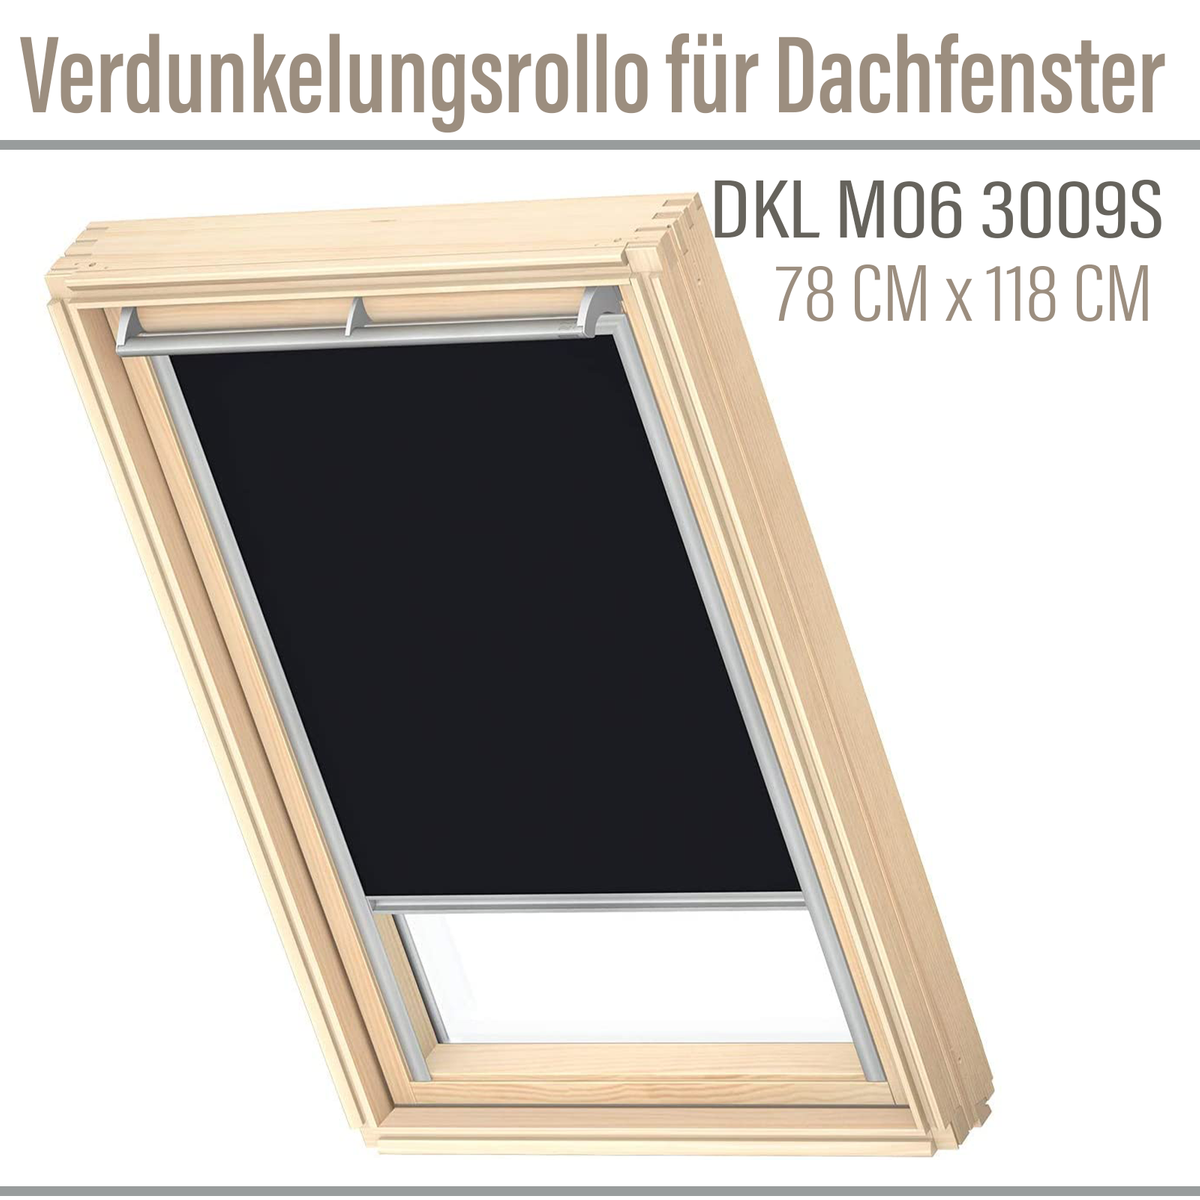 VELUX DKL M06 3009S Verdunkelungsrollo 78x118 Silberne Seitenschienen  Schwarz schwarz | Haus und Garten \\ Innenräume \\ Fensterabdeckung \\  Sichtschutzrollo Fensterabdeckung |